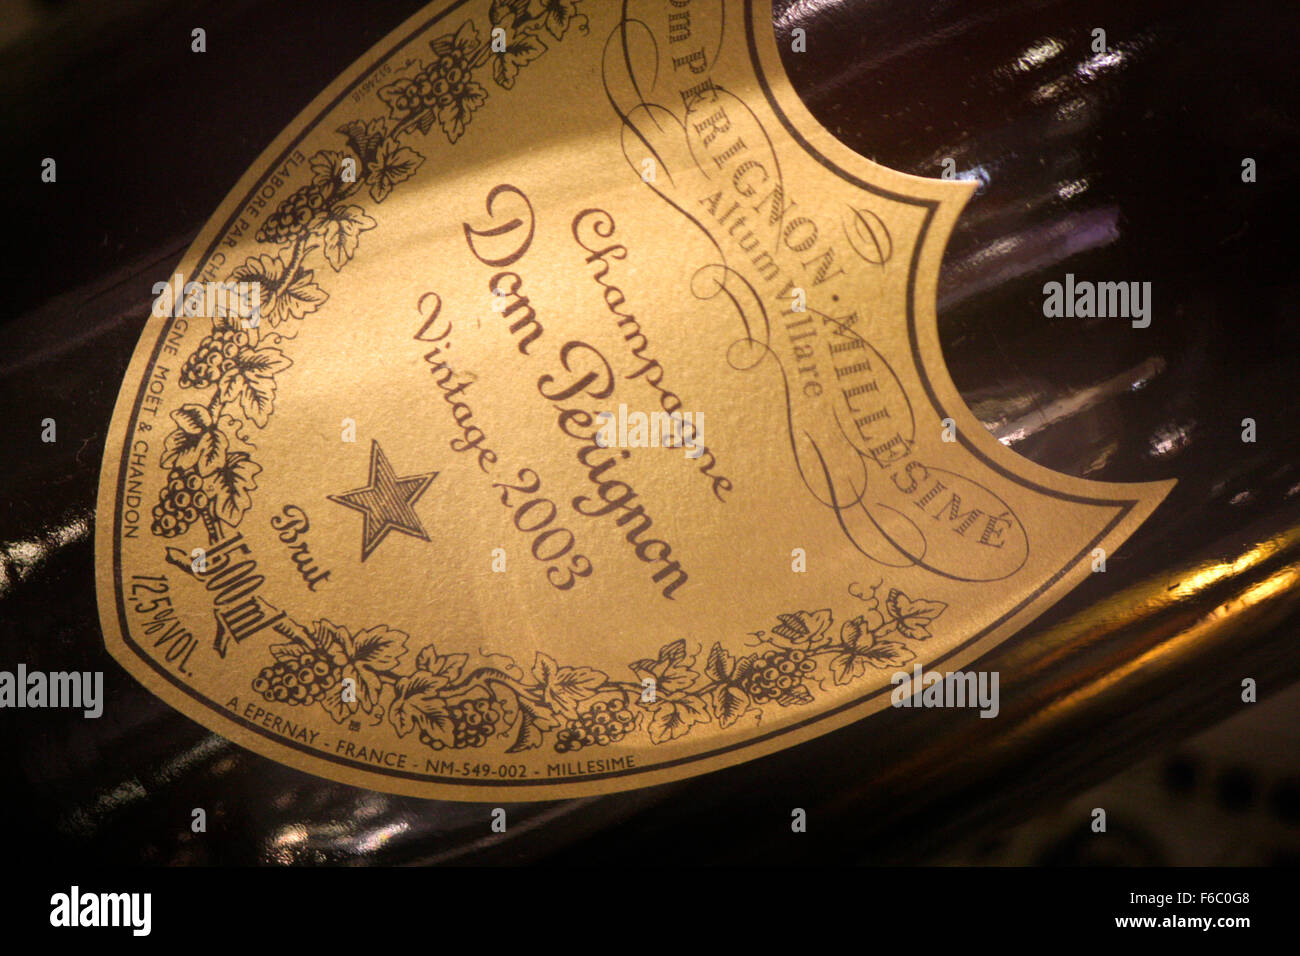 Markenname: 'Dom Perignon' Champagner, Berlin. Stock Photo